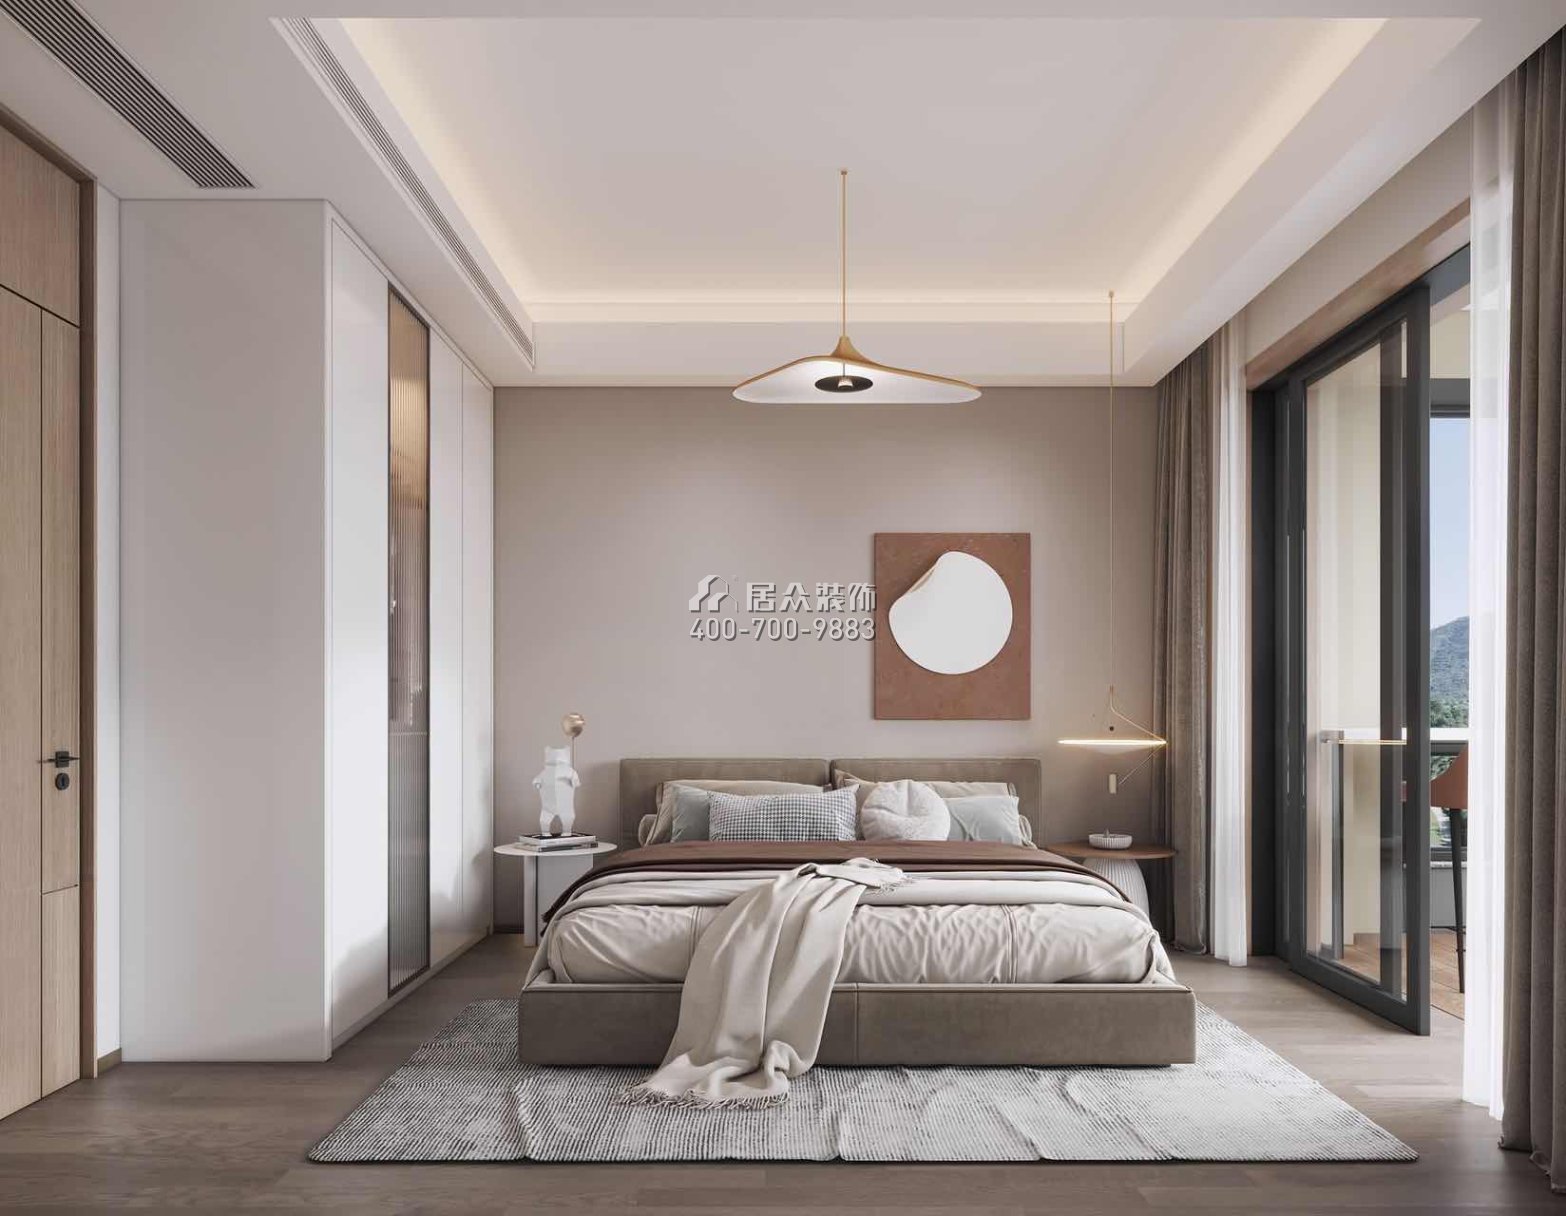 翠湖香山百合苑116平方米现代简约风格平层户型卧室装修效果图